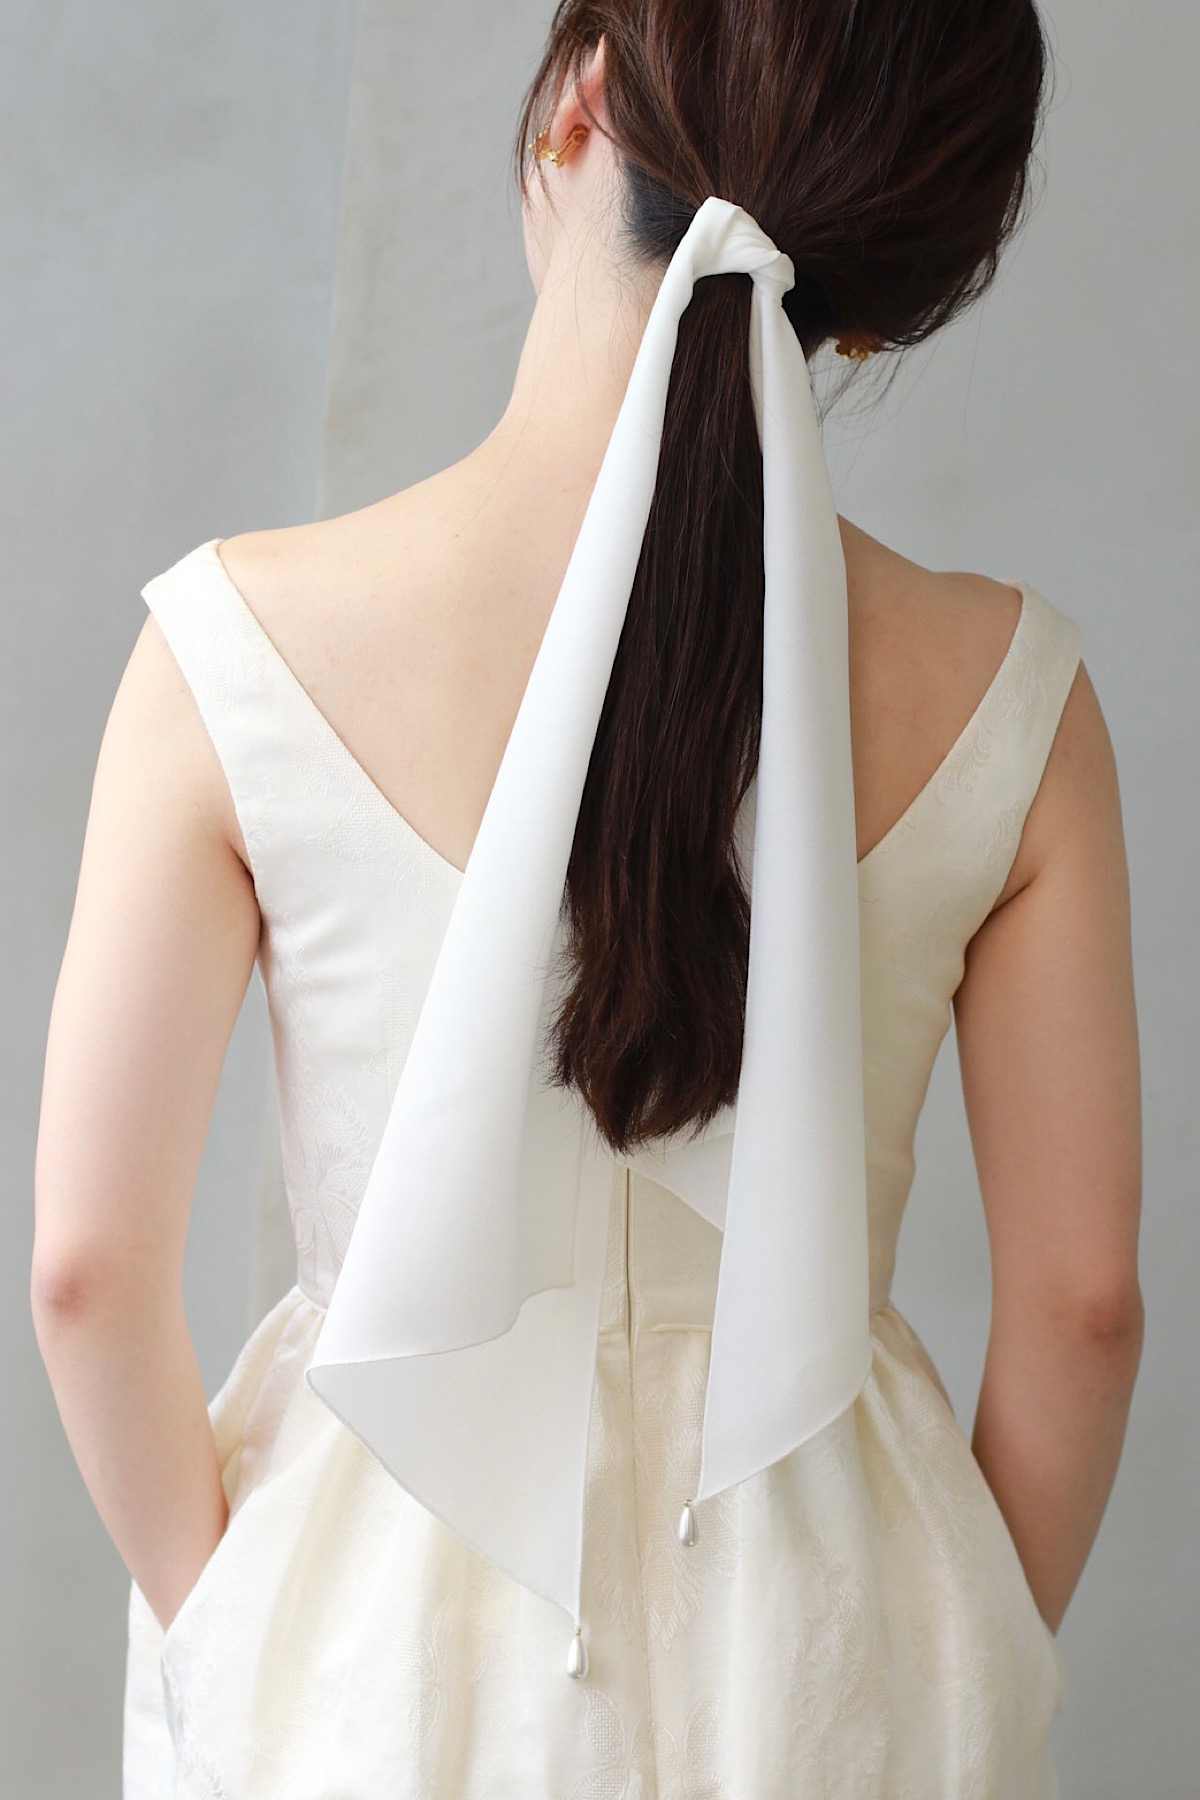 アットホームな結婚式にご提案したいバックスタイルはクレープ素材のスカーフがローポニーテールに結ばれて、エフォートレスでありながら特別感のあるコーディネート